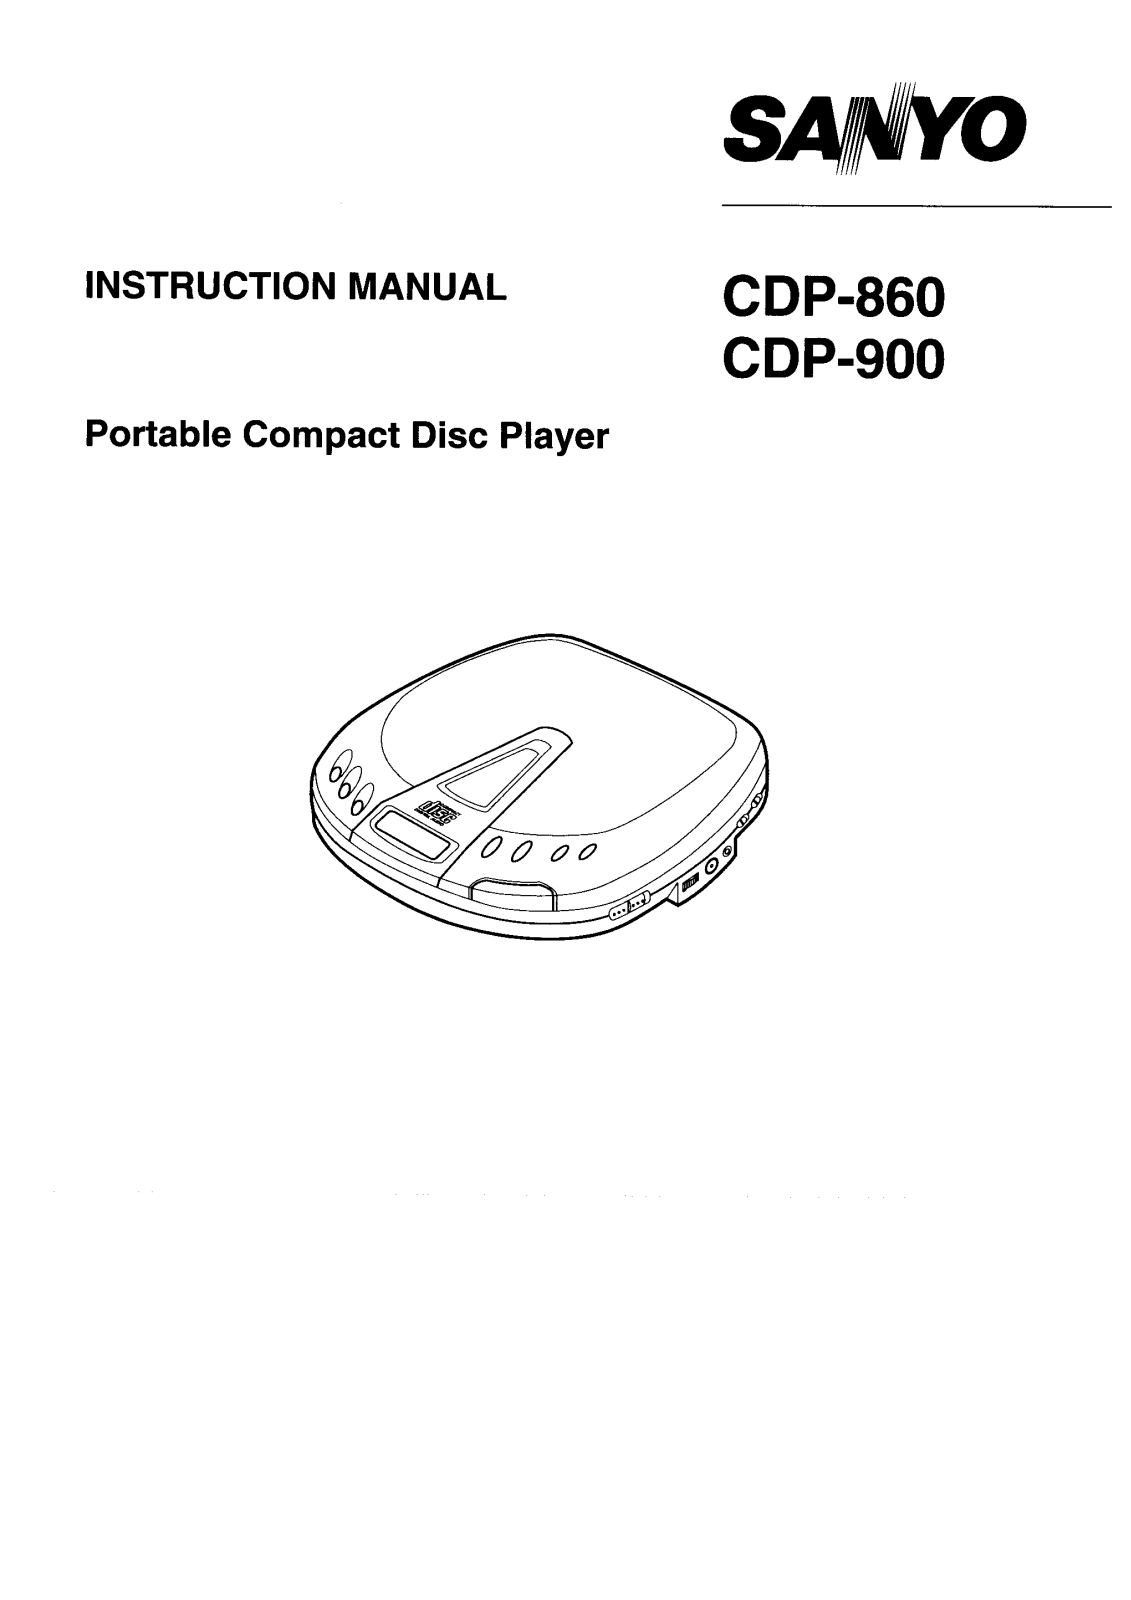 Sanyo CDP-900, CDP-860 Instruction Manual